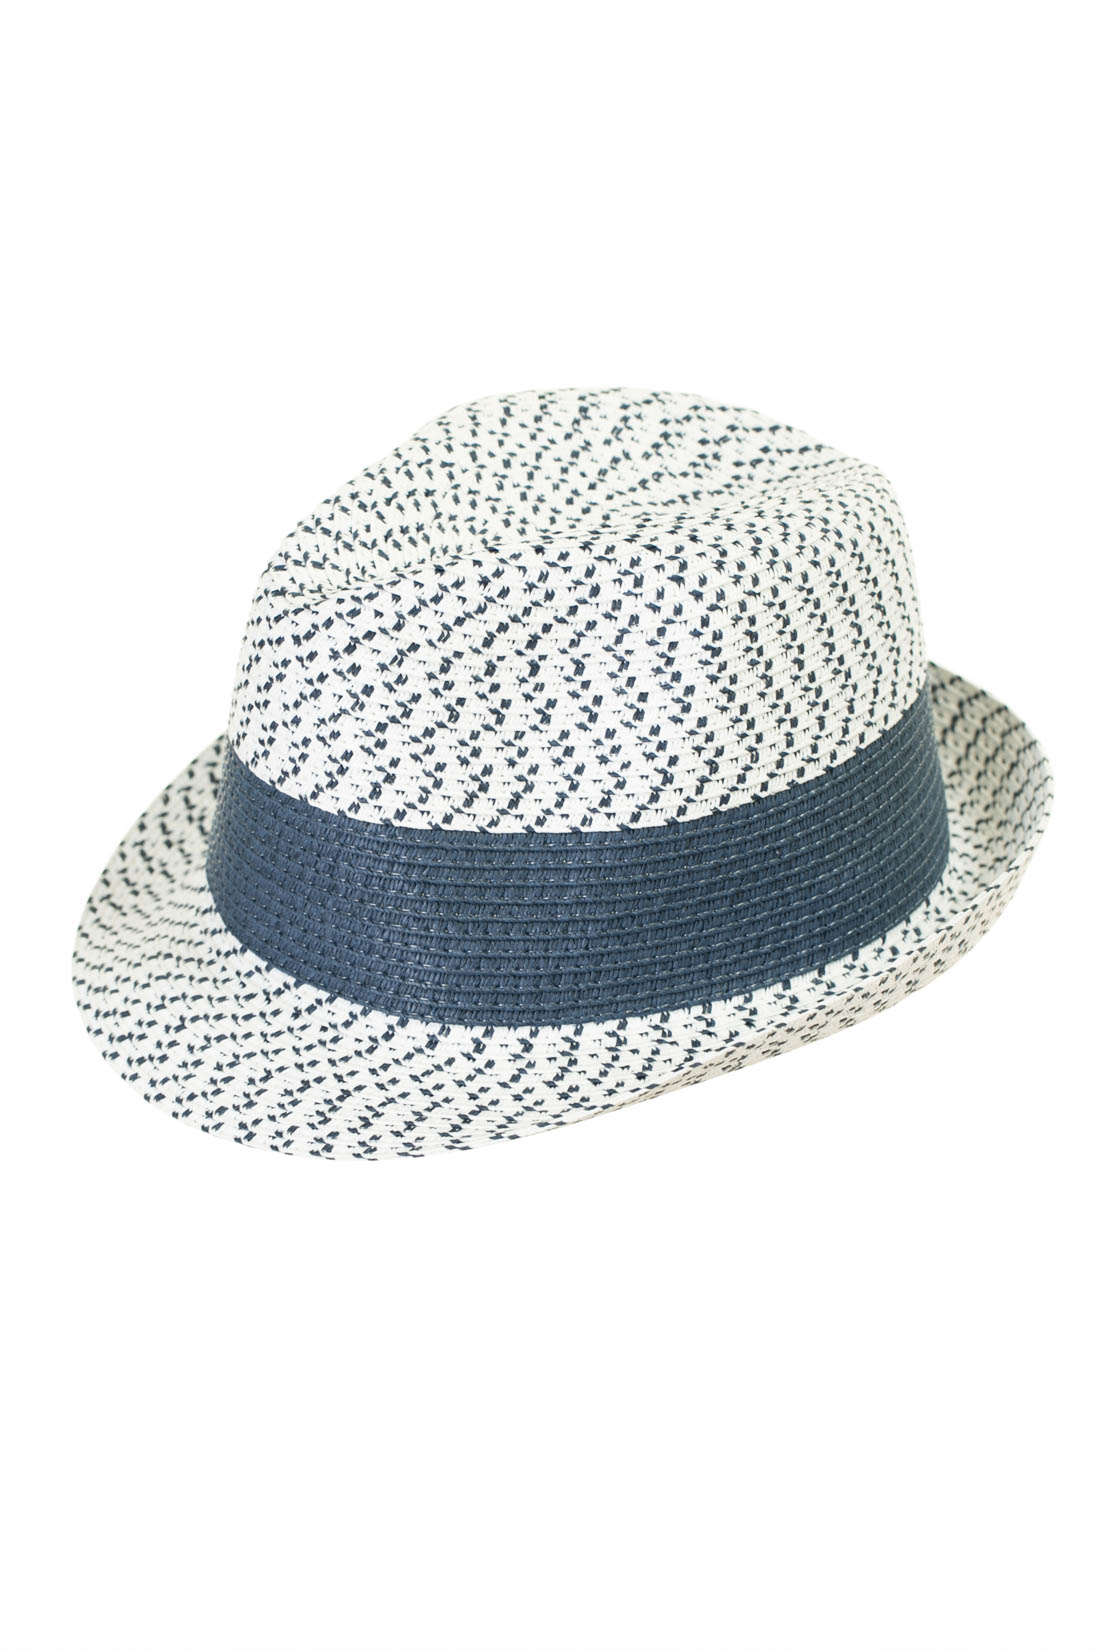 Шляпа в морском стиле (арт. baon B847002), размер 56-58, цвет белый